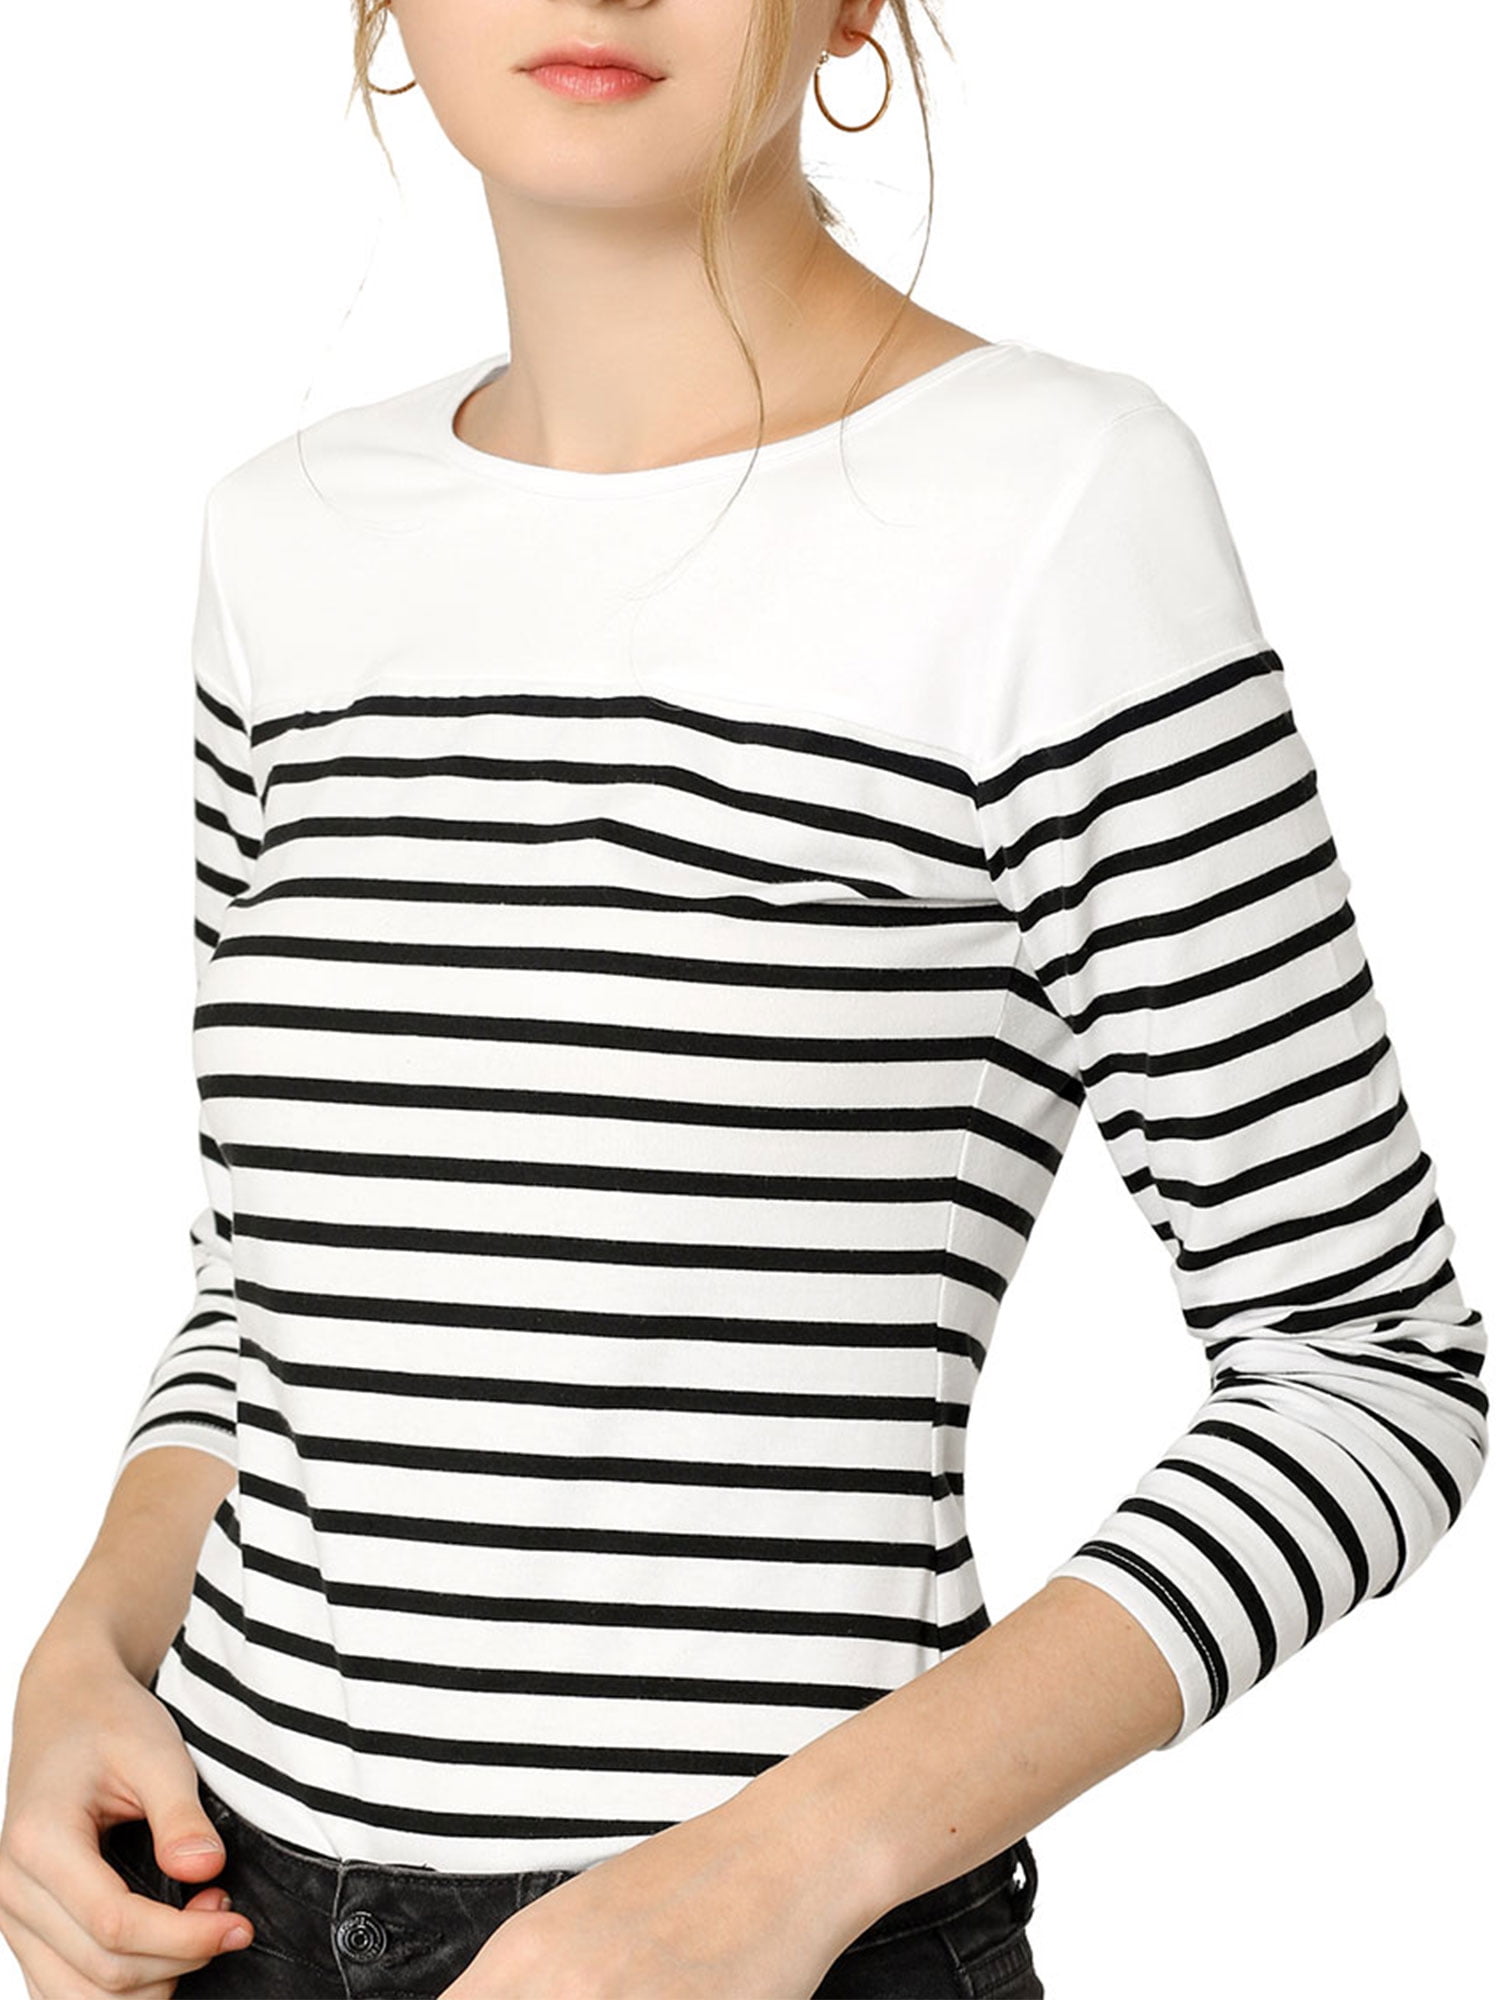 Unique Bargains Women's Color Block Striped Knit Top Long Sleeves T-Shirt  2XL Black-White 